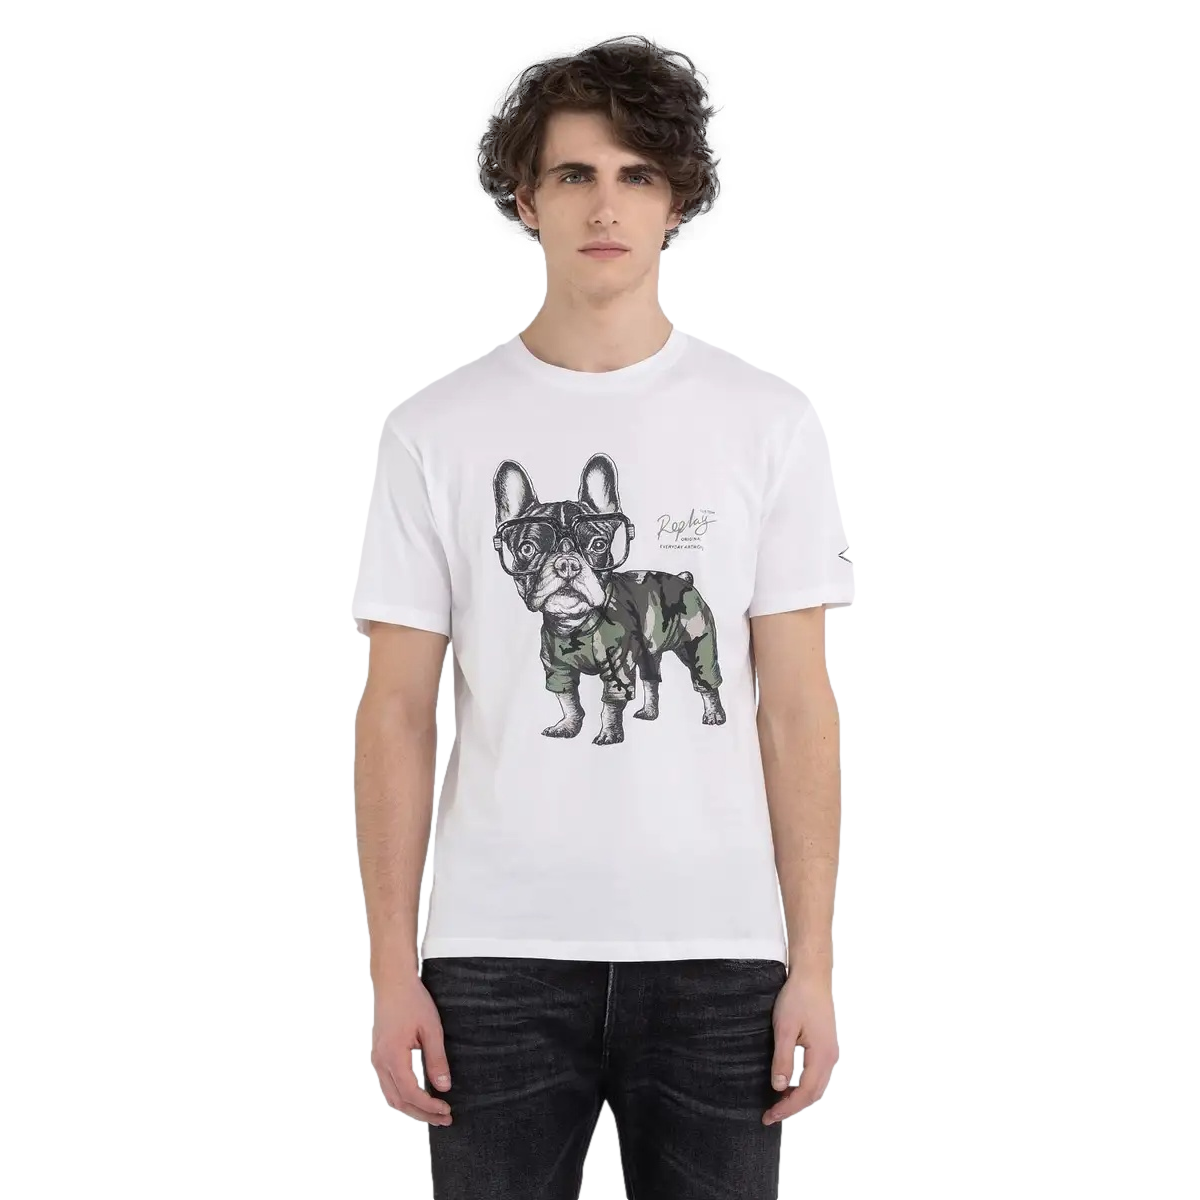 Replay Bulldog T-Shirt M6677 001 White